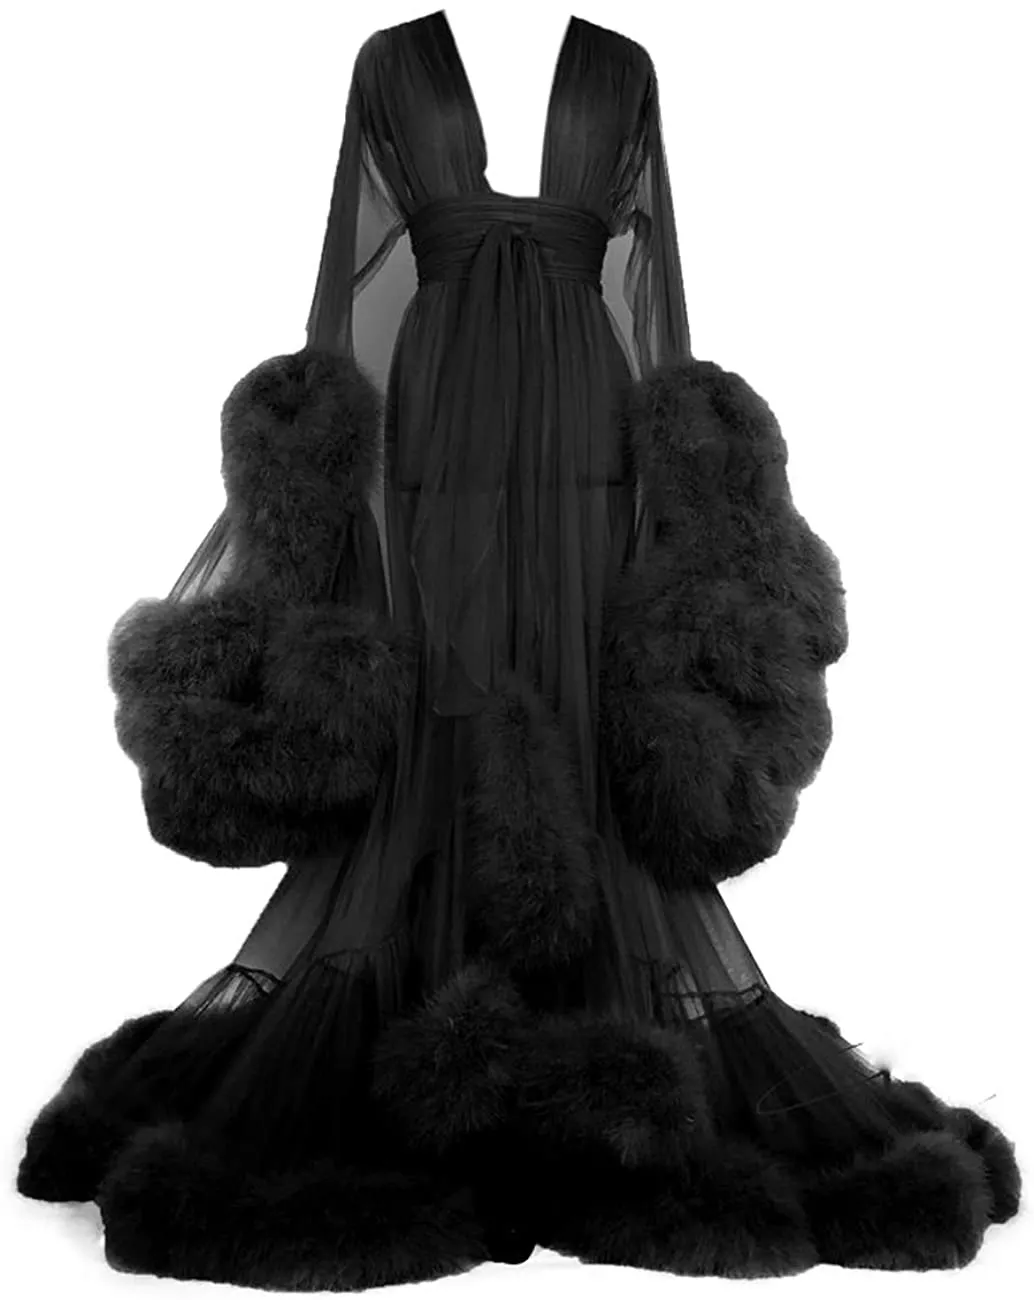 2021 noir robes de soirée femmes enceintes Photo Robes femmes plume bord Tulle longue Robe de mariée peignoirs avec ceinture